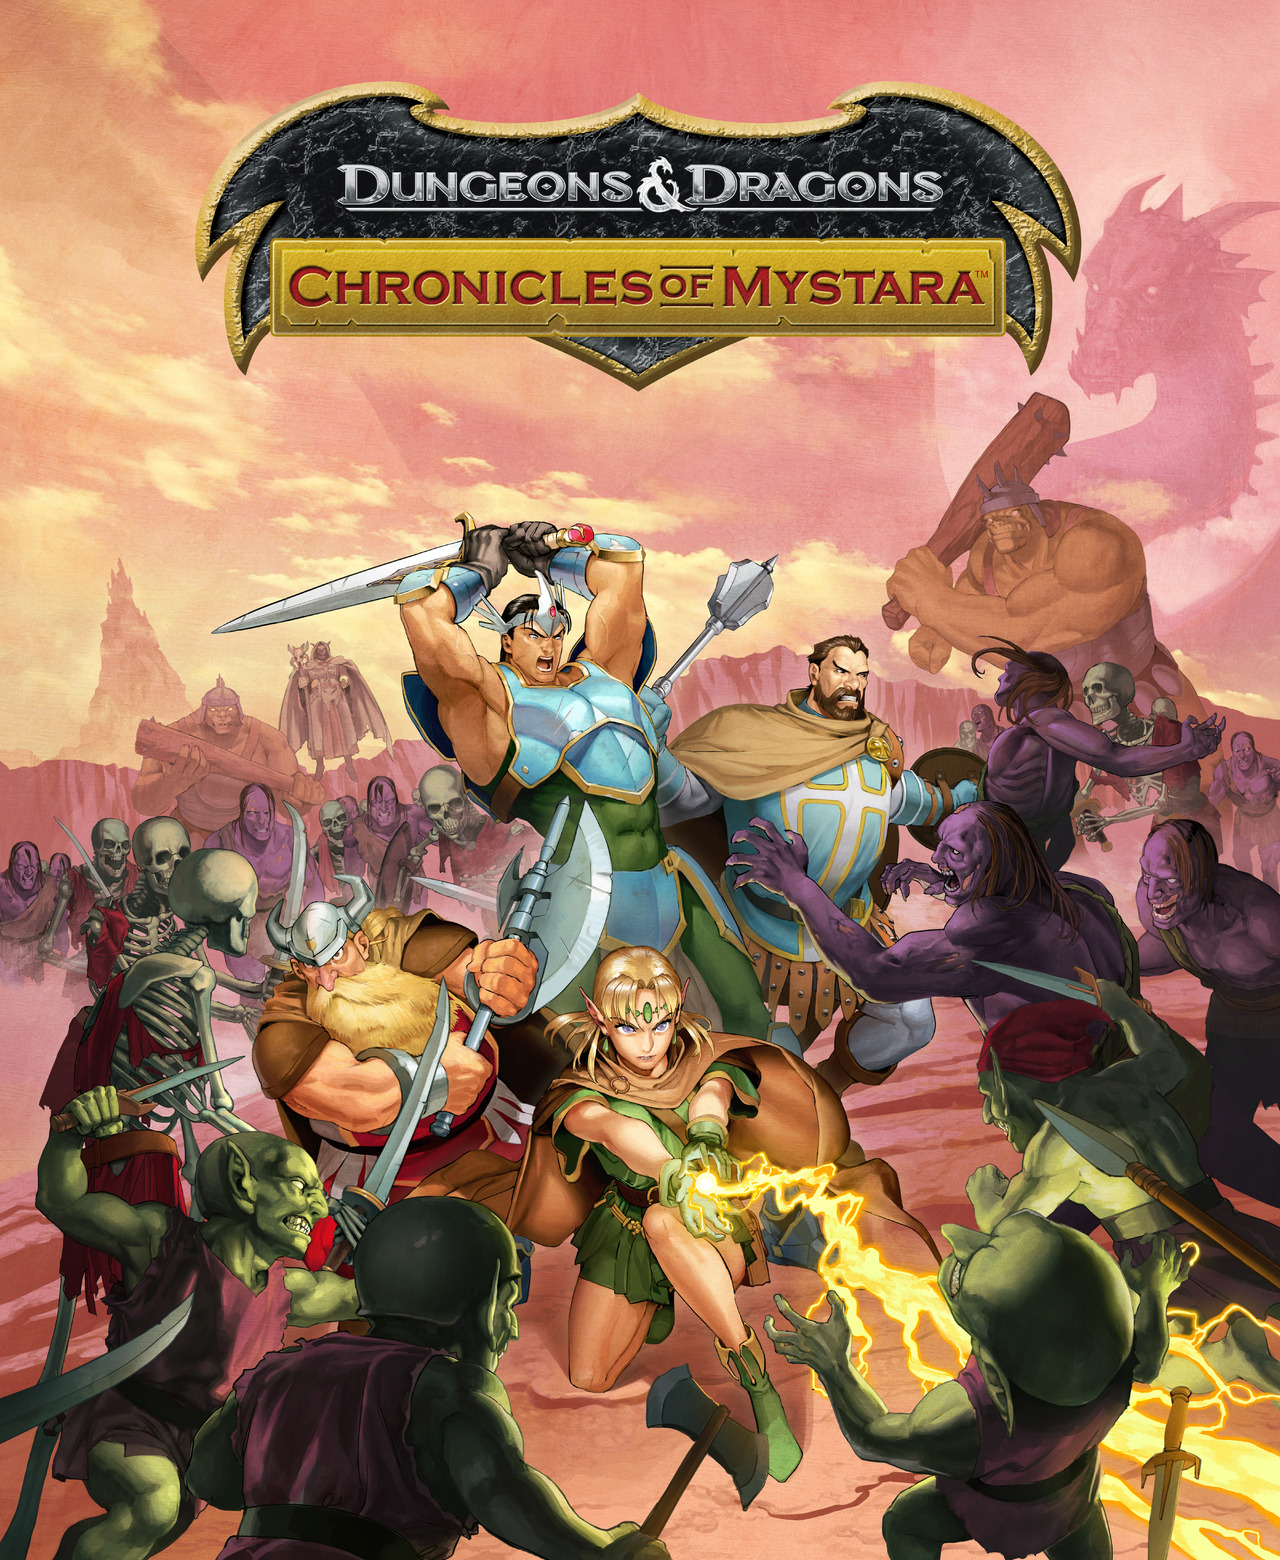  لعبة Dungeons & Dragons Chronicles of Mystara - xbox 360 Jaquette-dungeons-dragons-chronicles-of-mystara-pc-cover-avant-g-1363978954